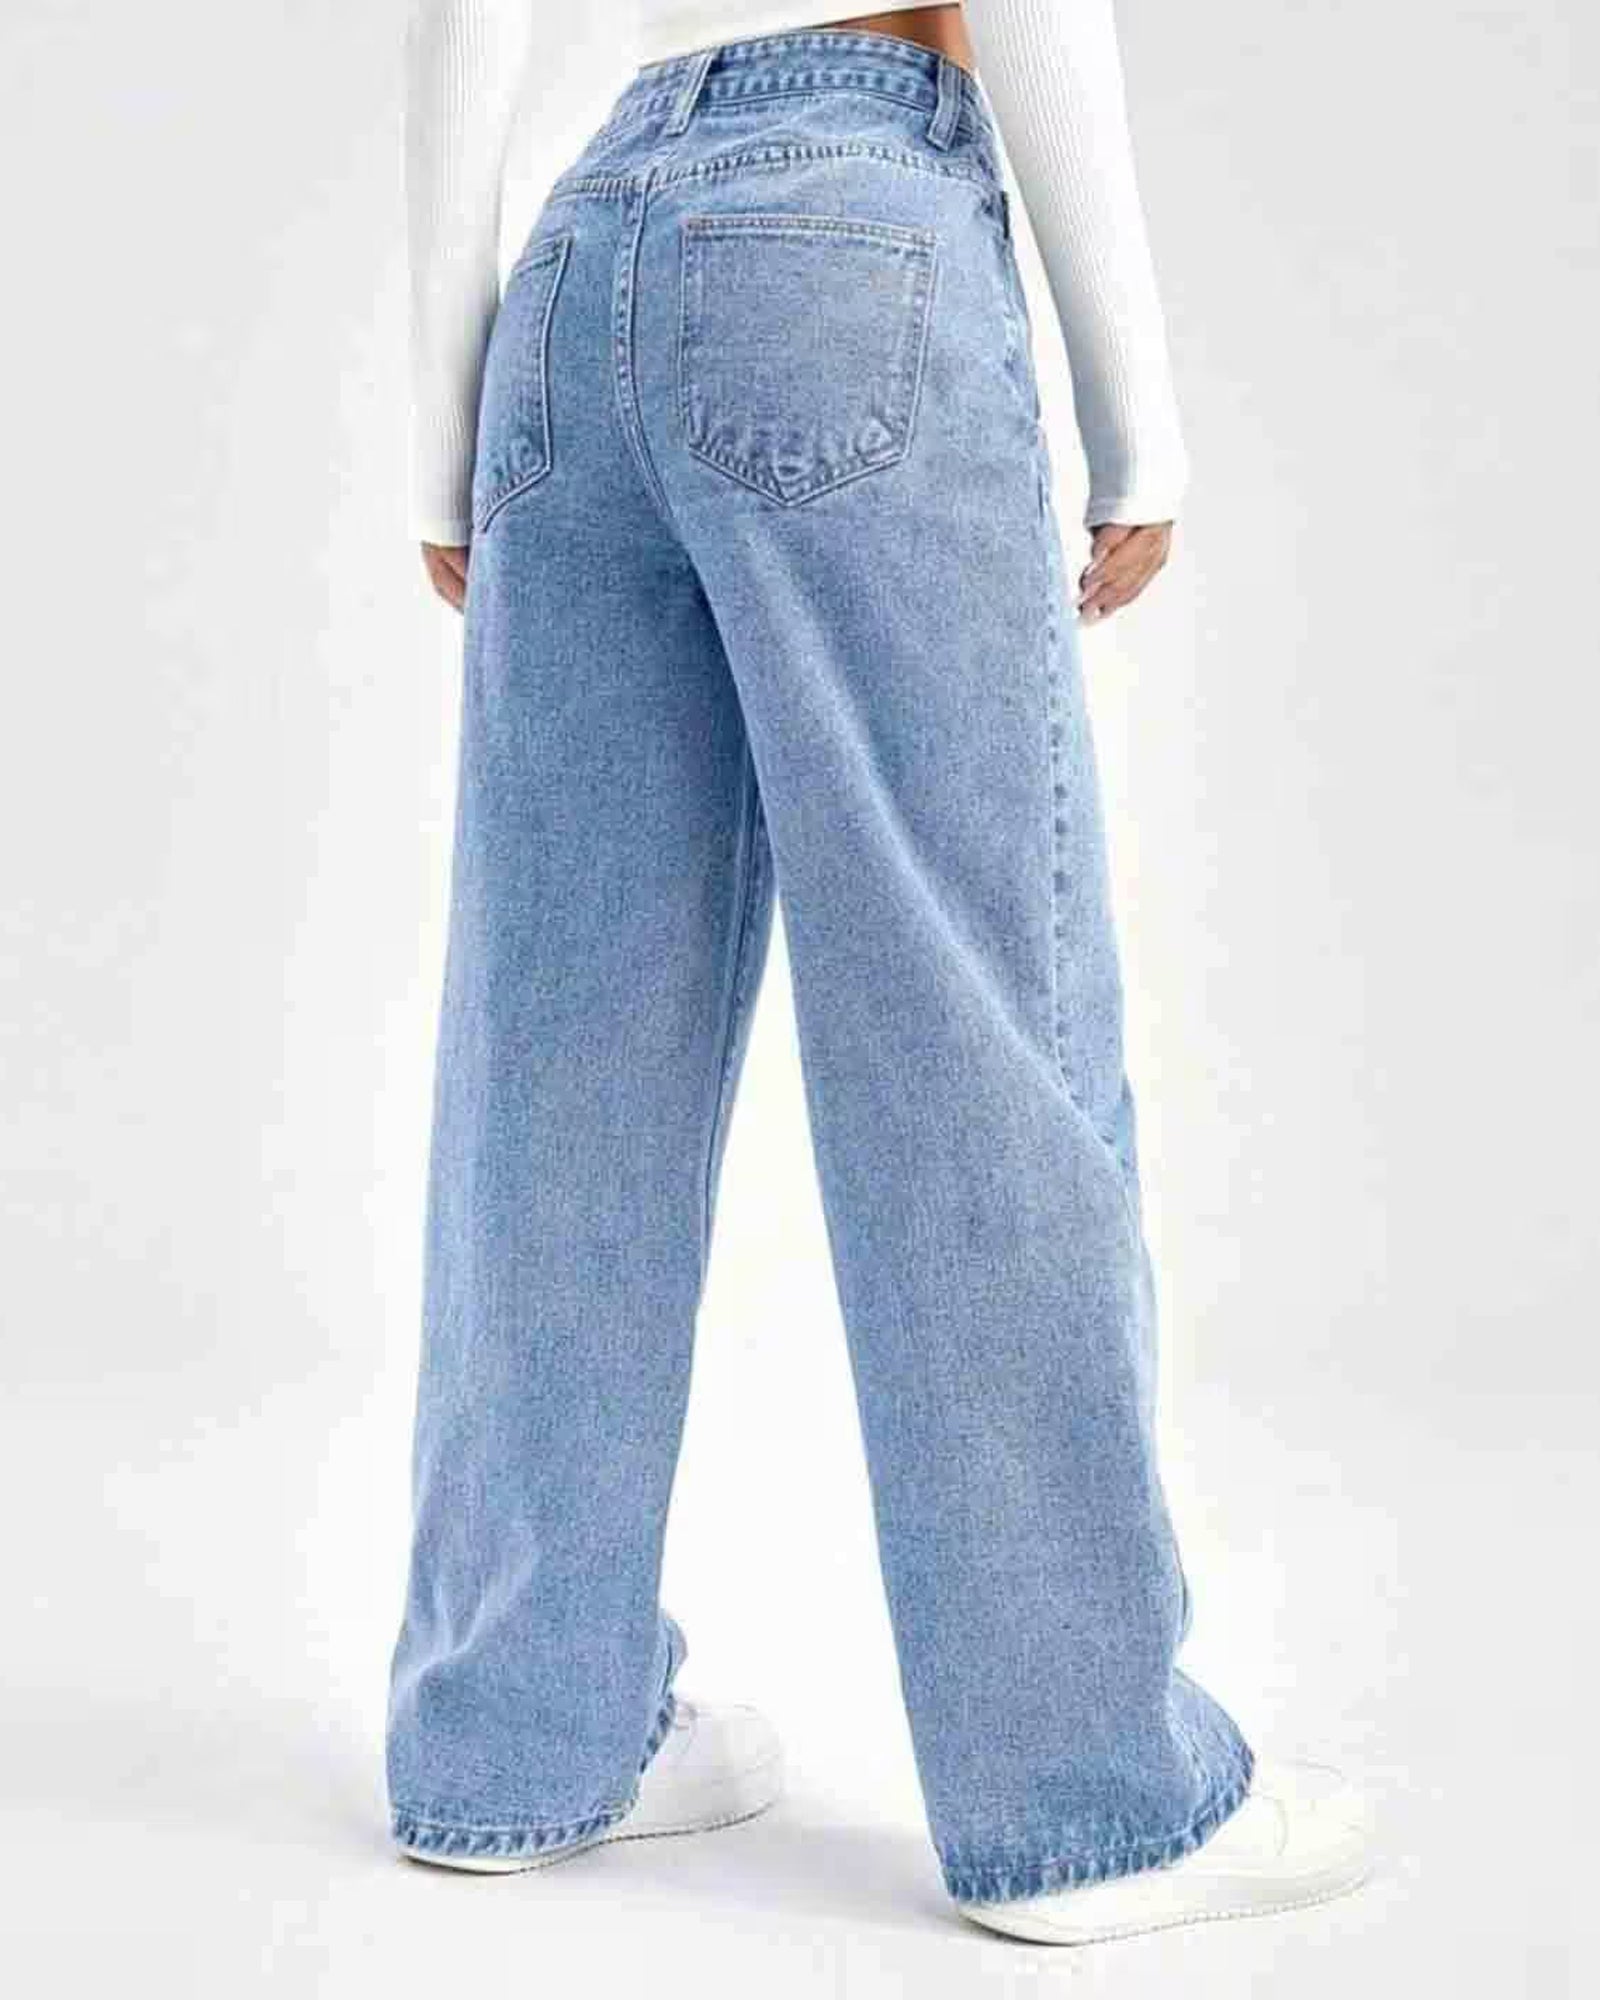 Women's Fade Denim Jeans